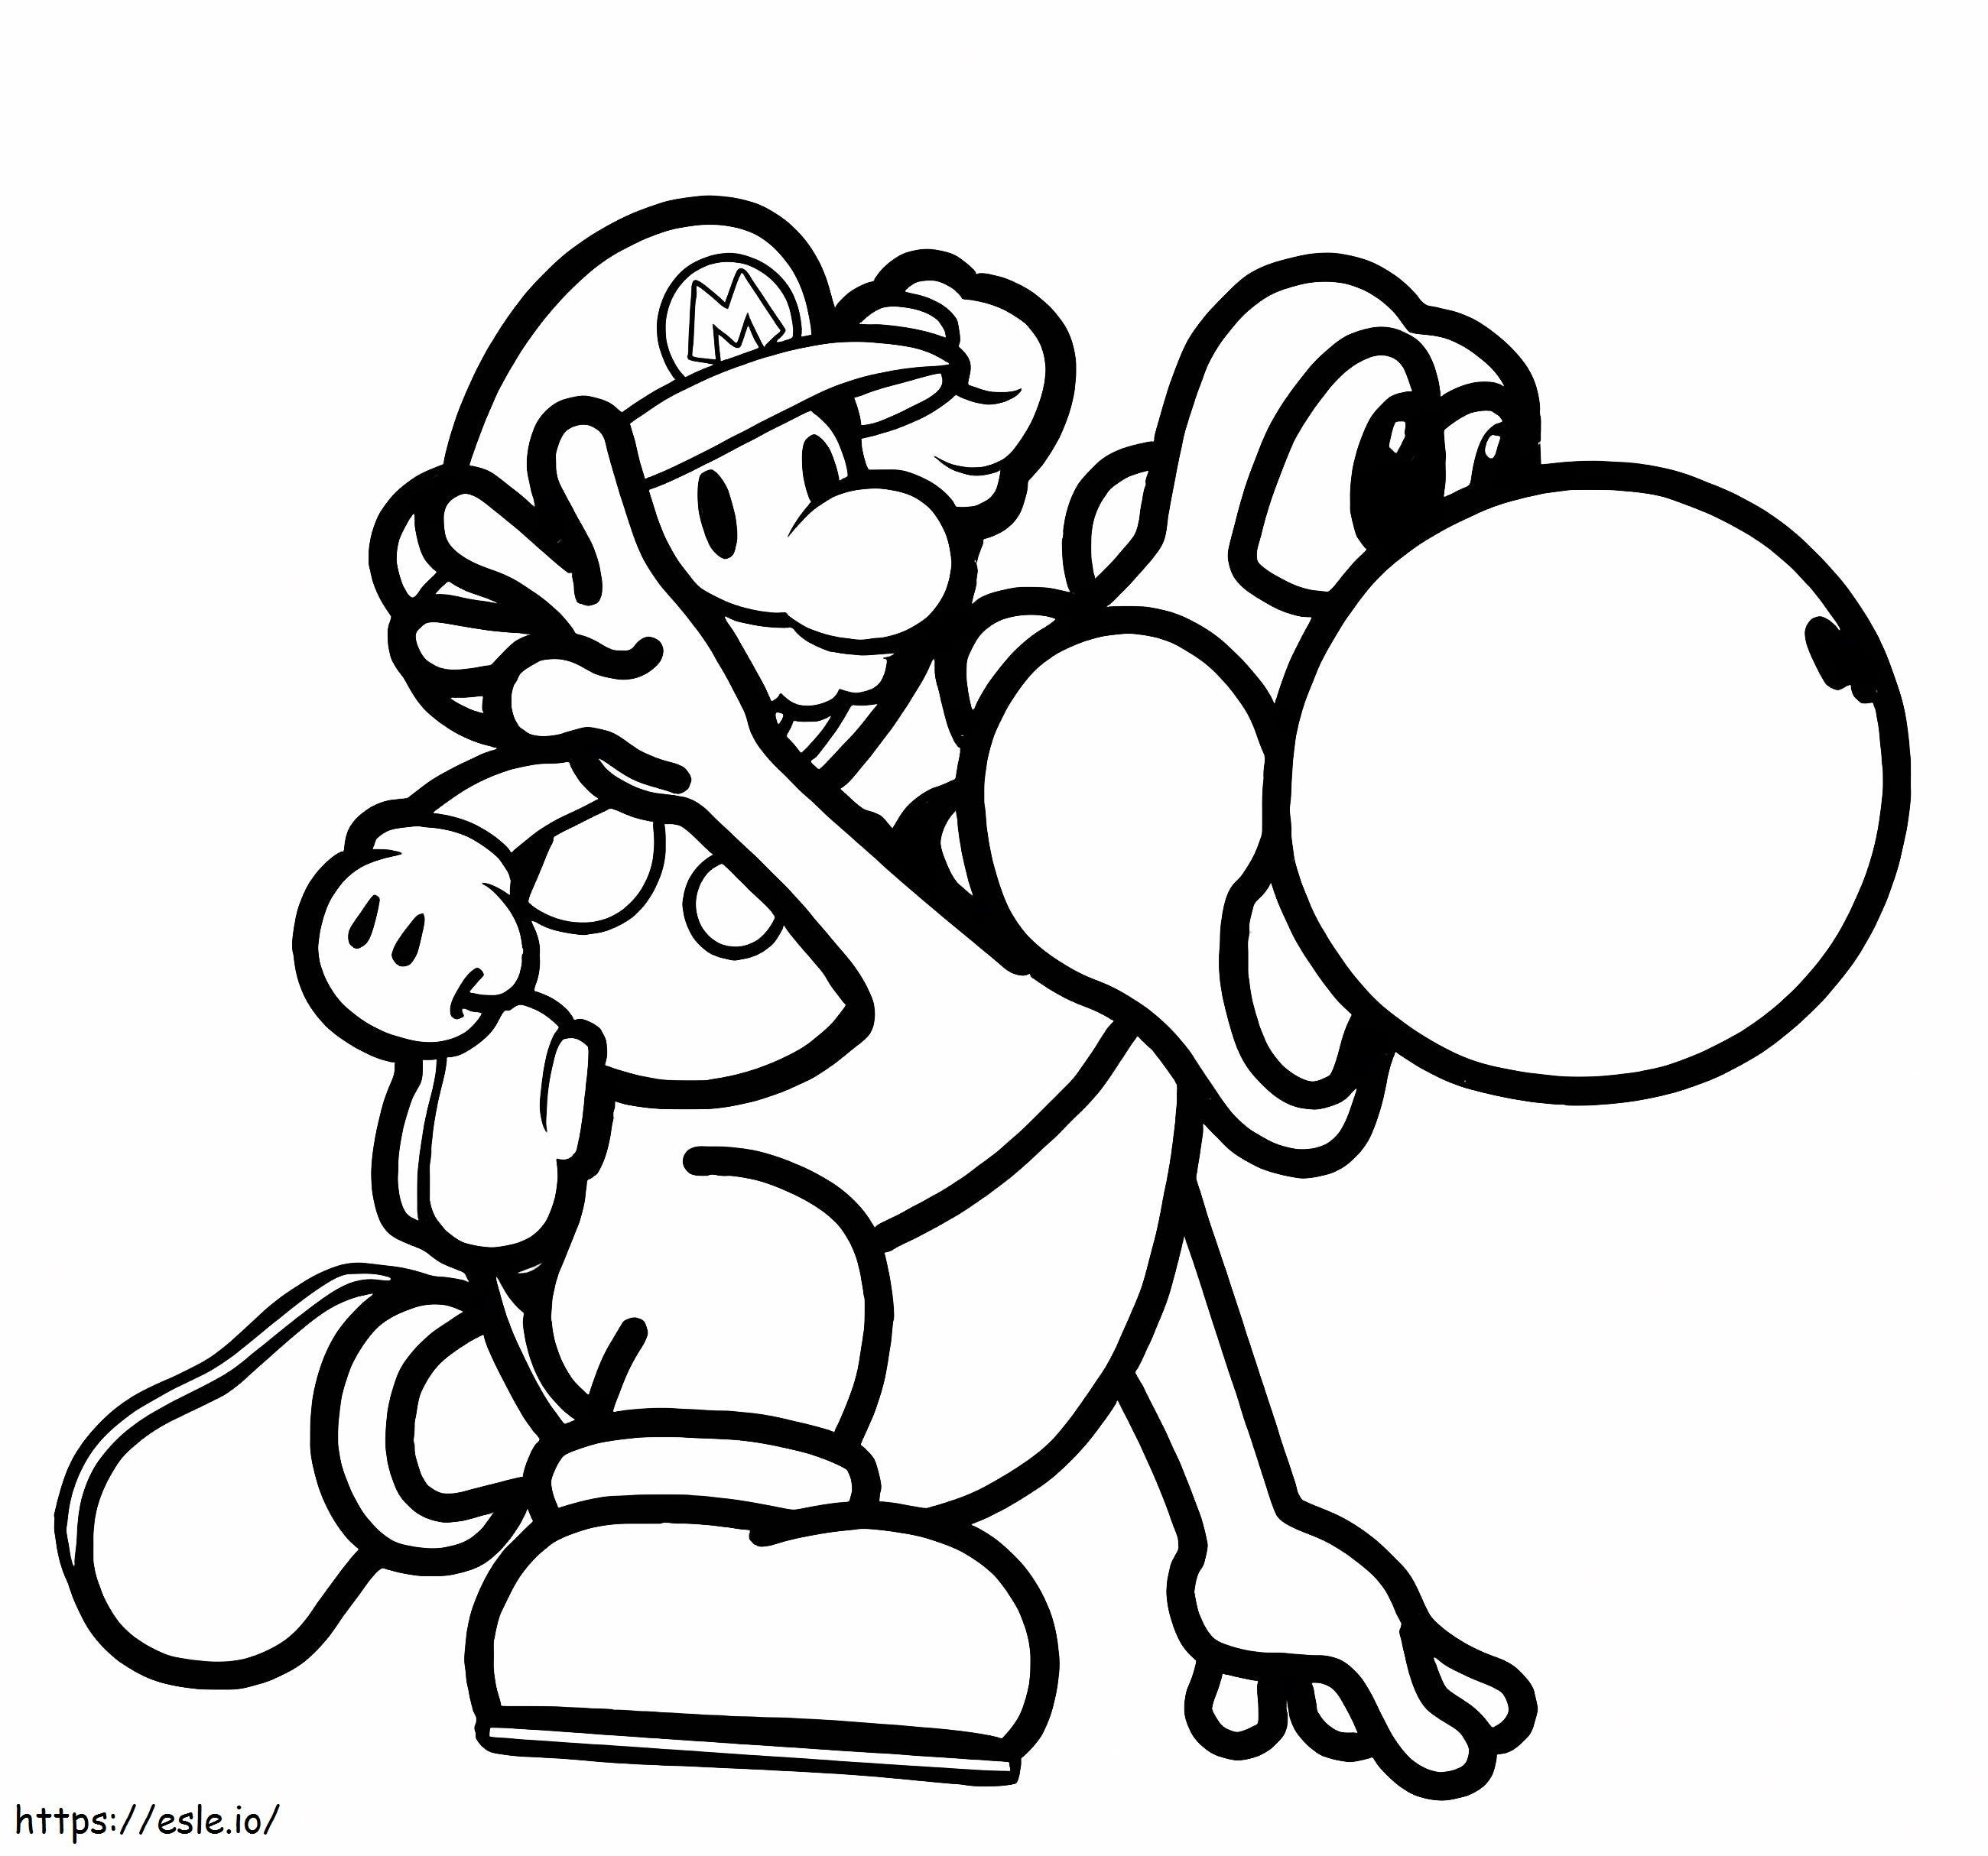 Yoshi și Mario de colorat